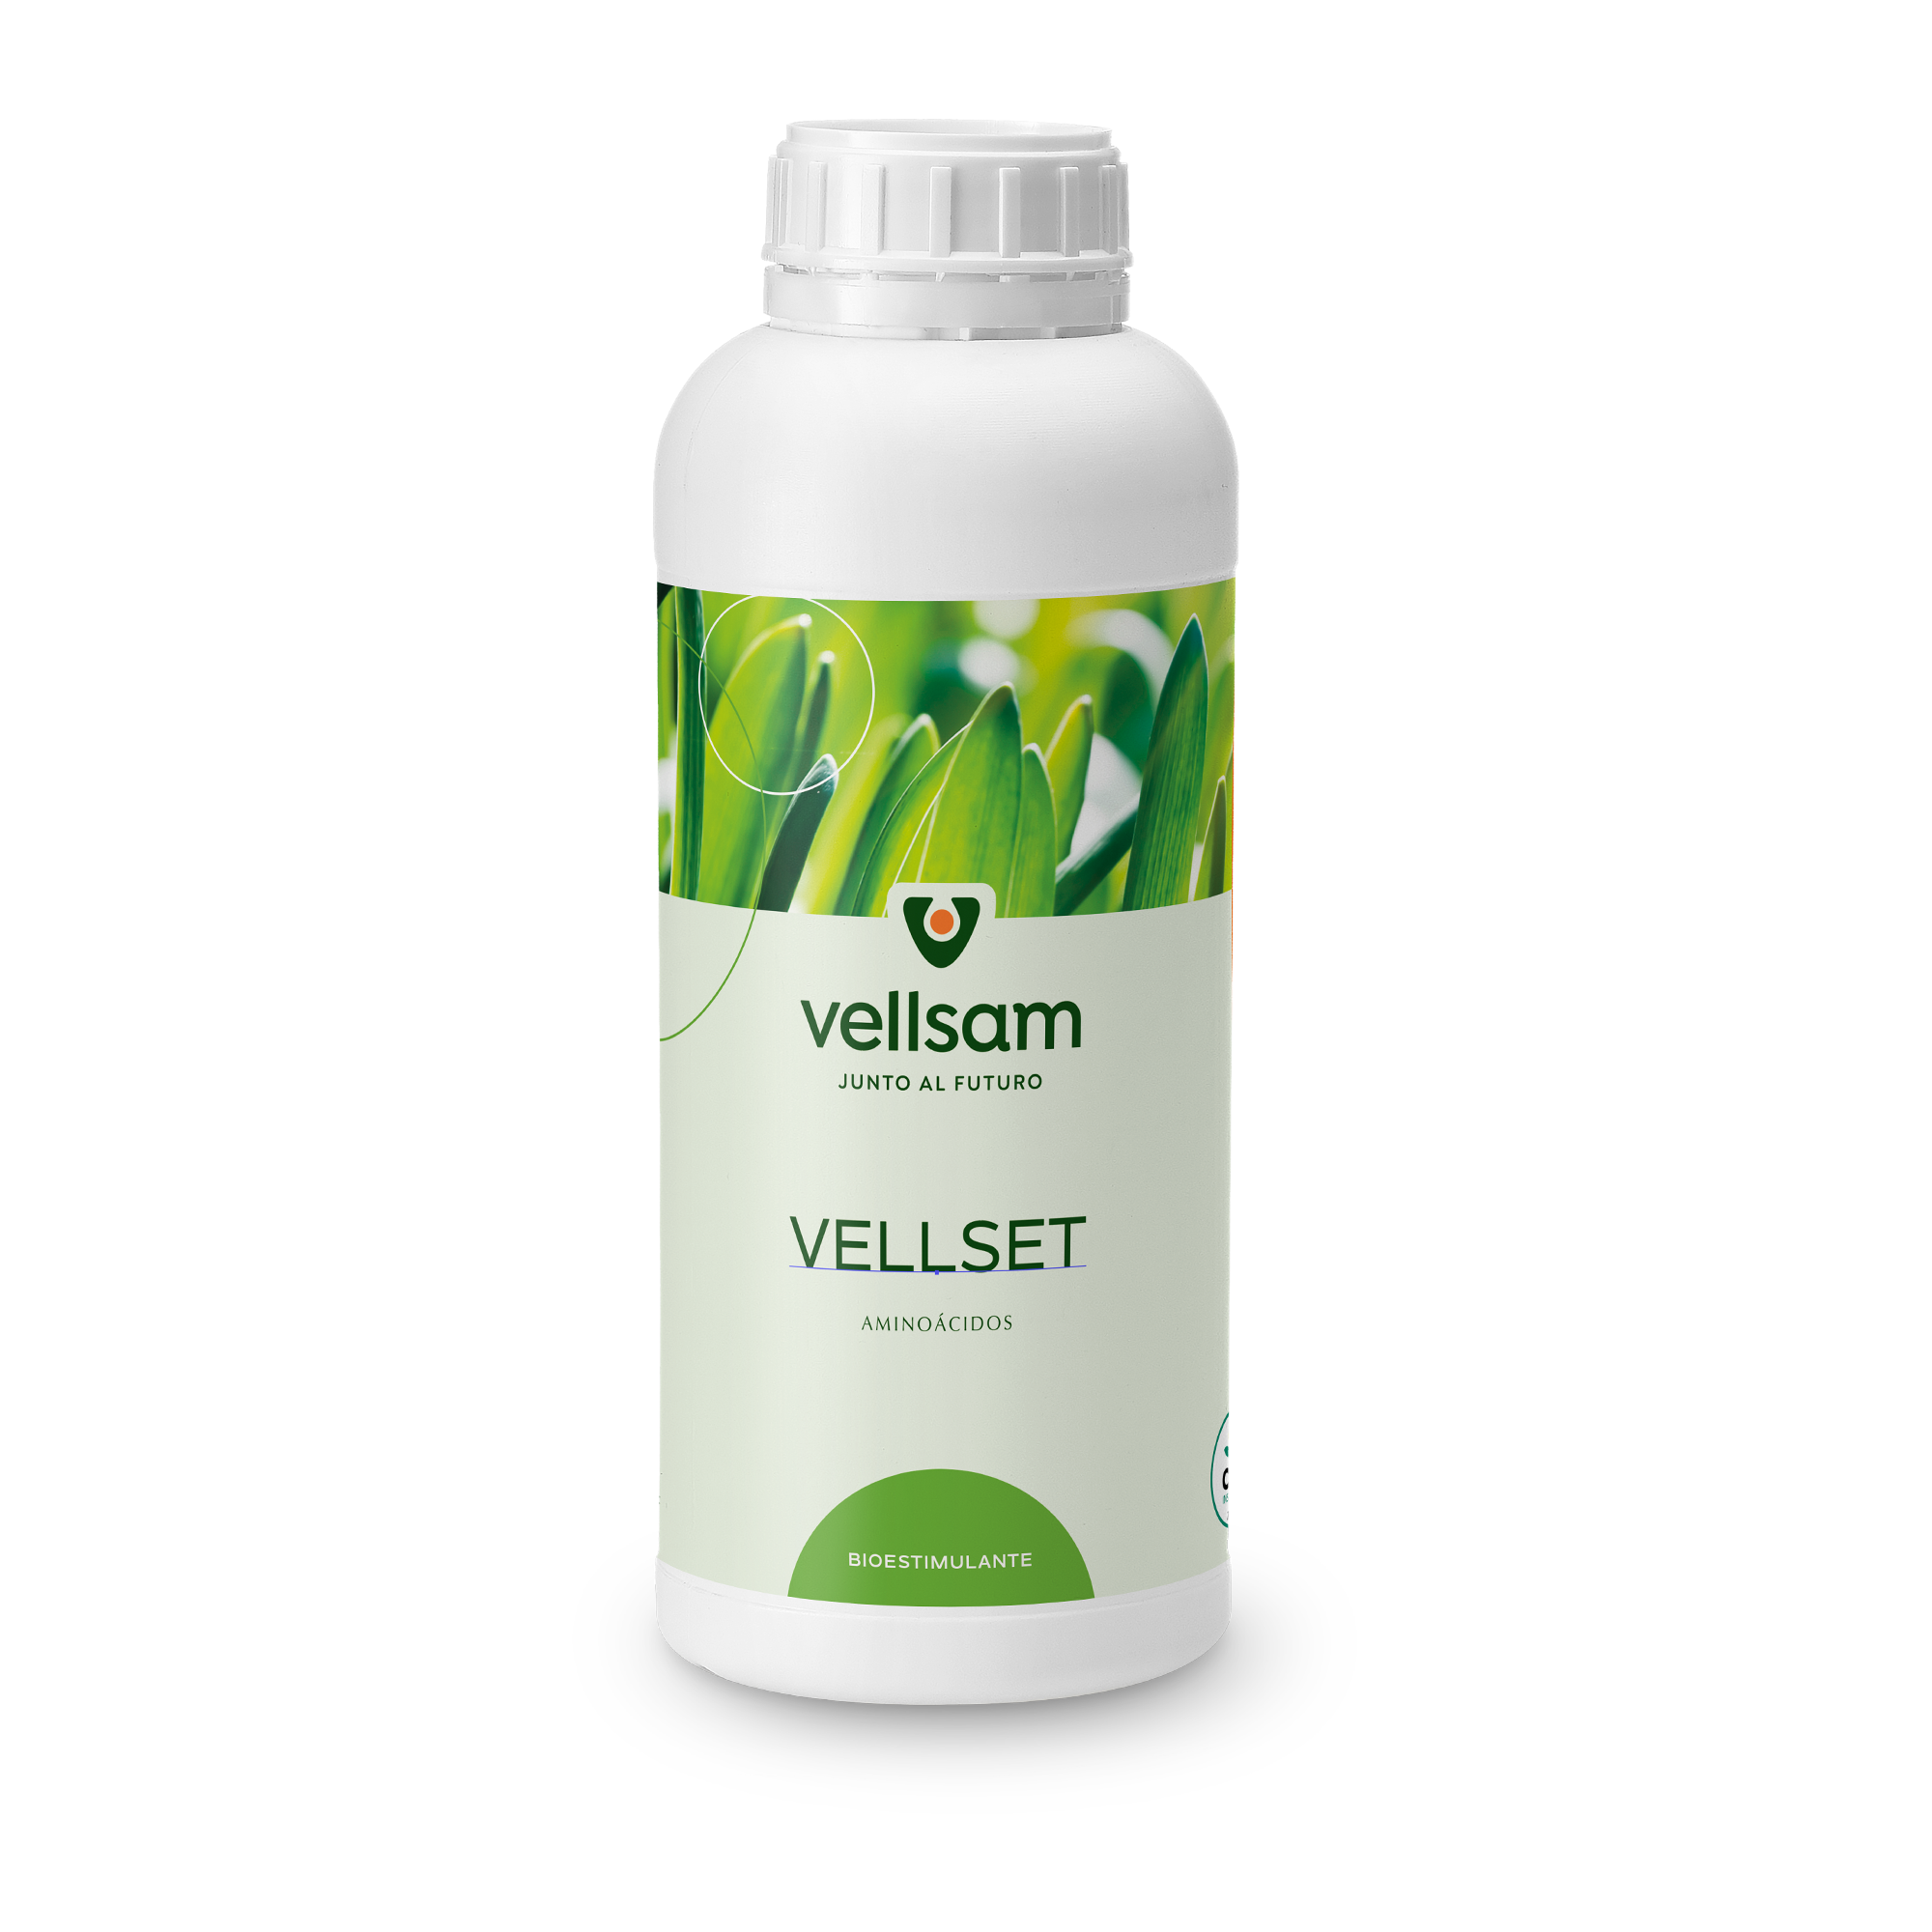 Vellset - Јединствен производ који у свом саставу има аминокиселину Л-триптофан, молибден, бор, азот и угљене хидрате.